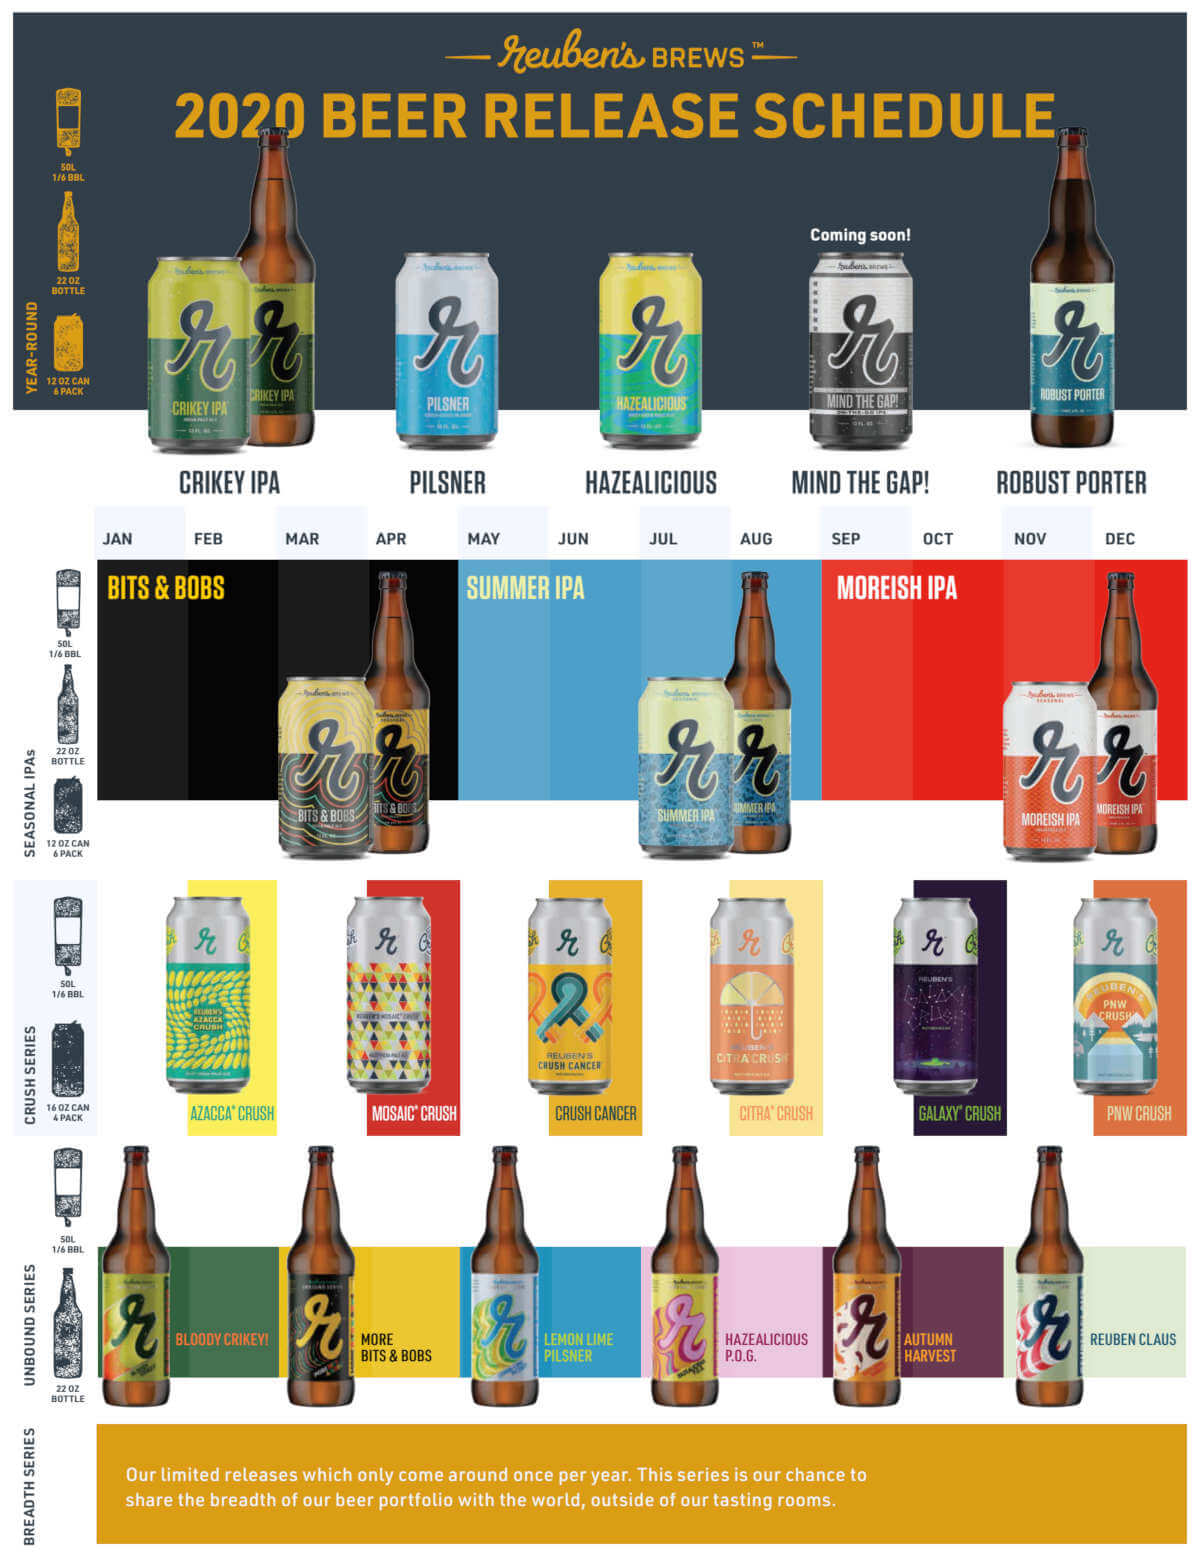 Reuben’s Brews 2020 Beer Lineup